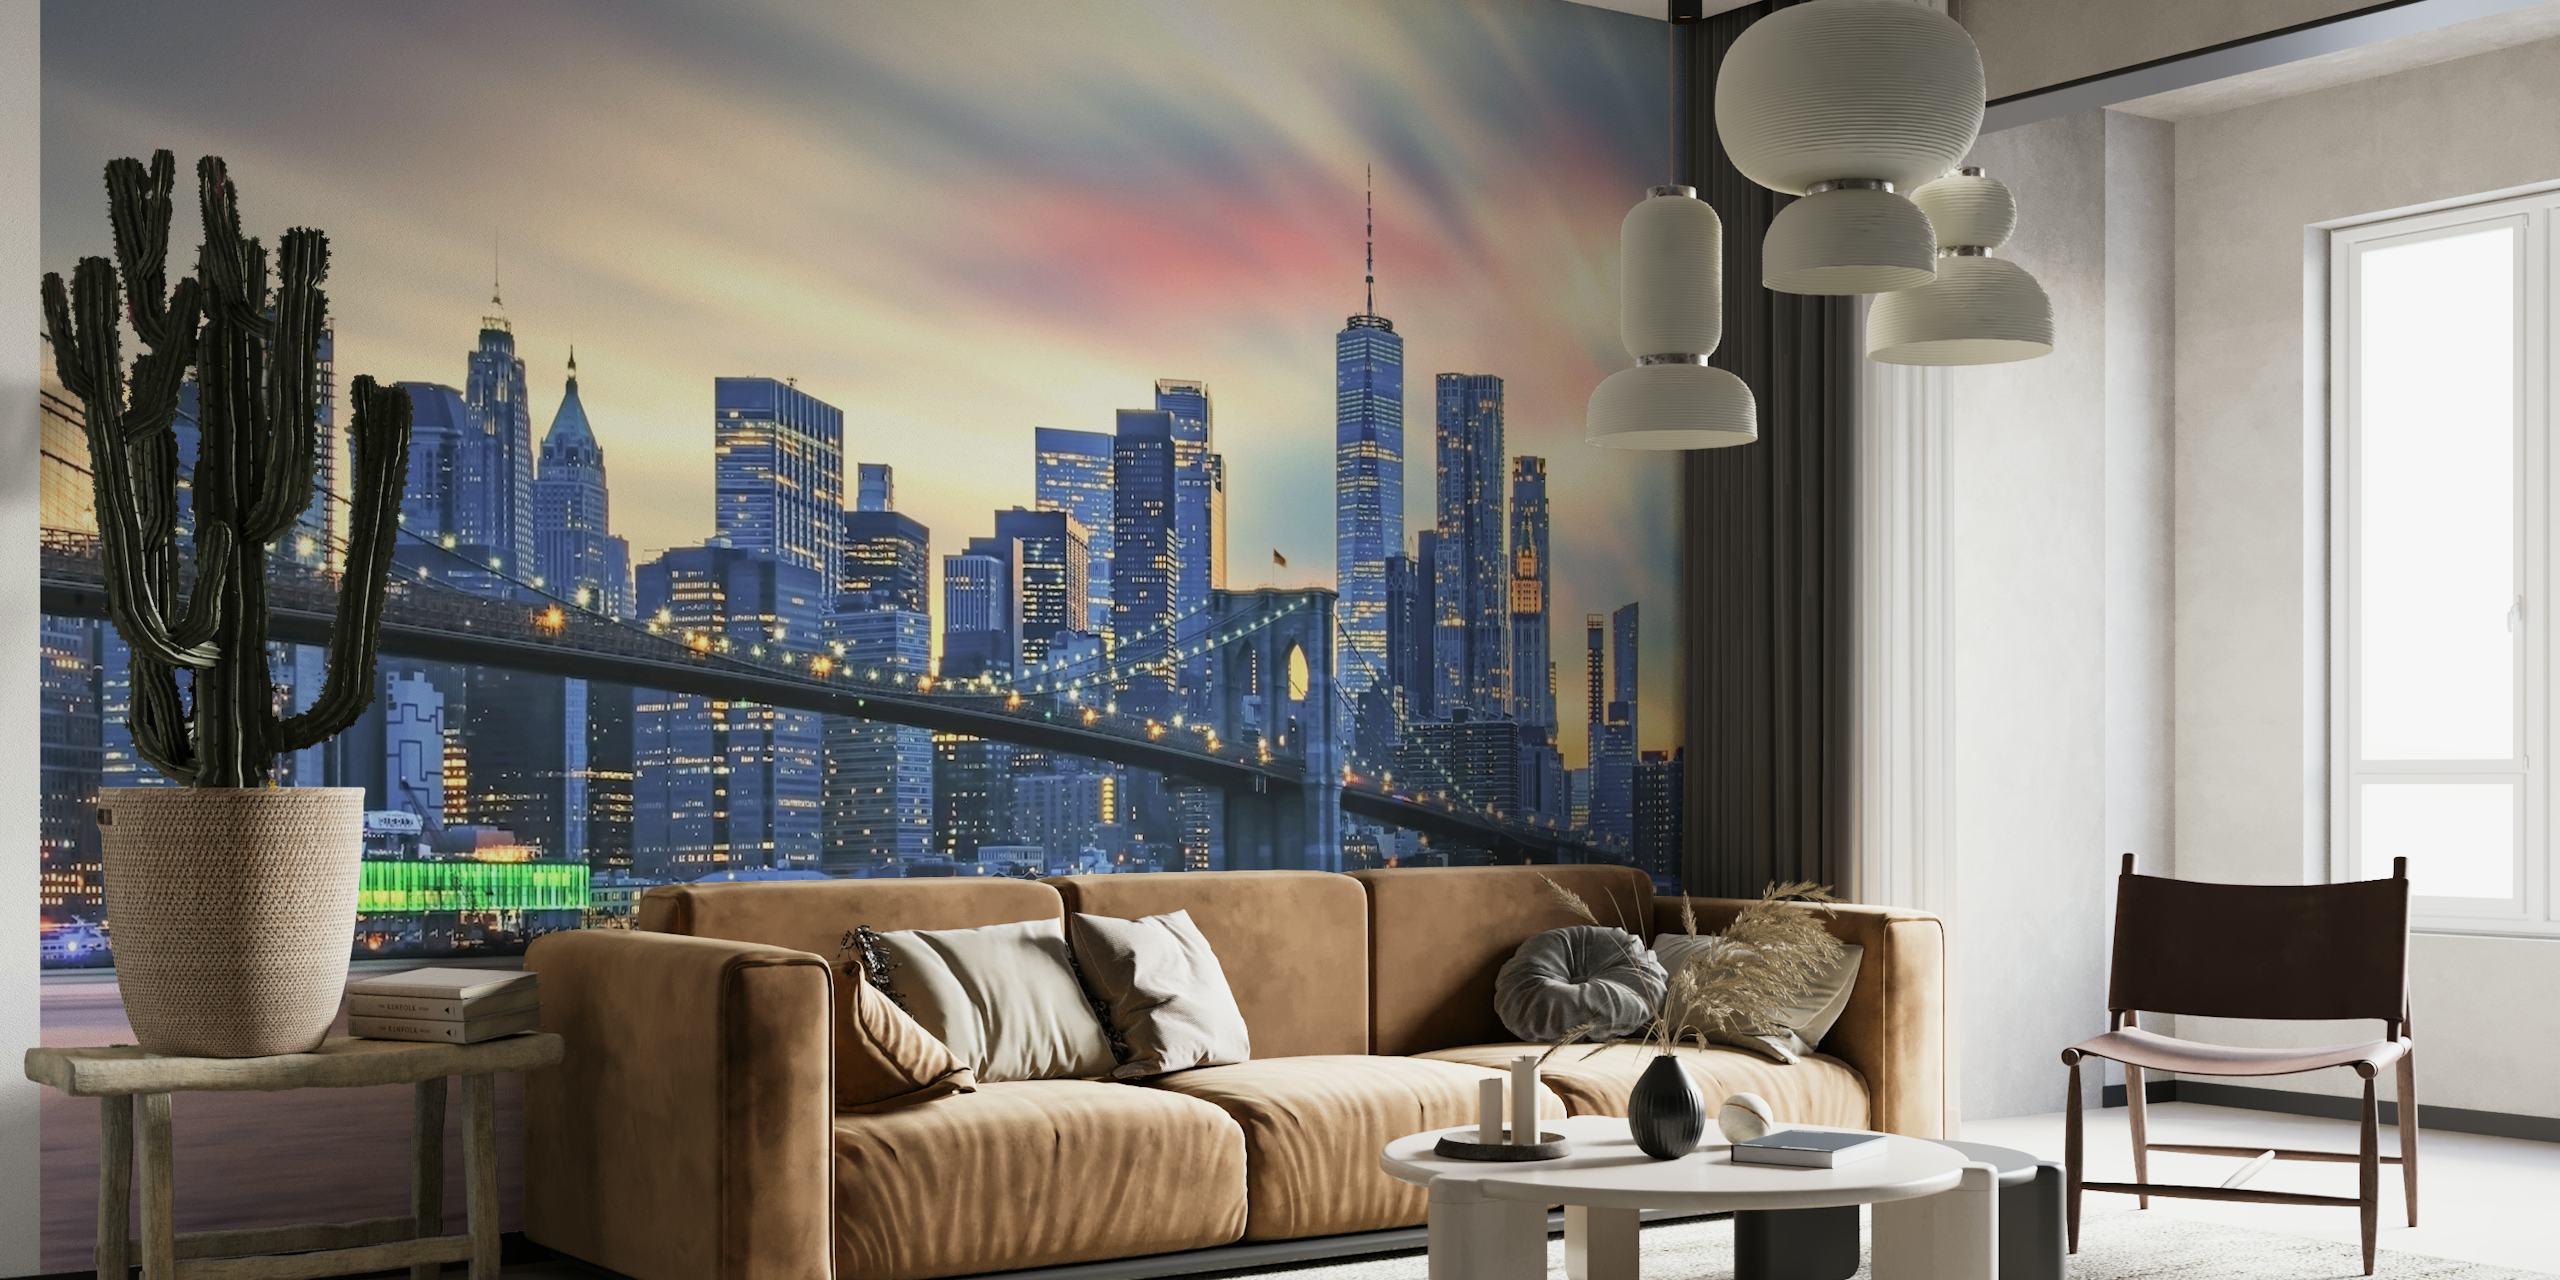 Horizonte da cidade de Nova York ao entardecer com iluminação quente nos edifícios e a Ponte do Brooklyn em primeiro plano